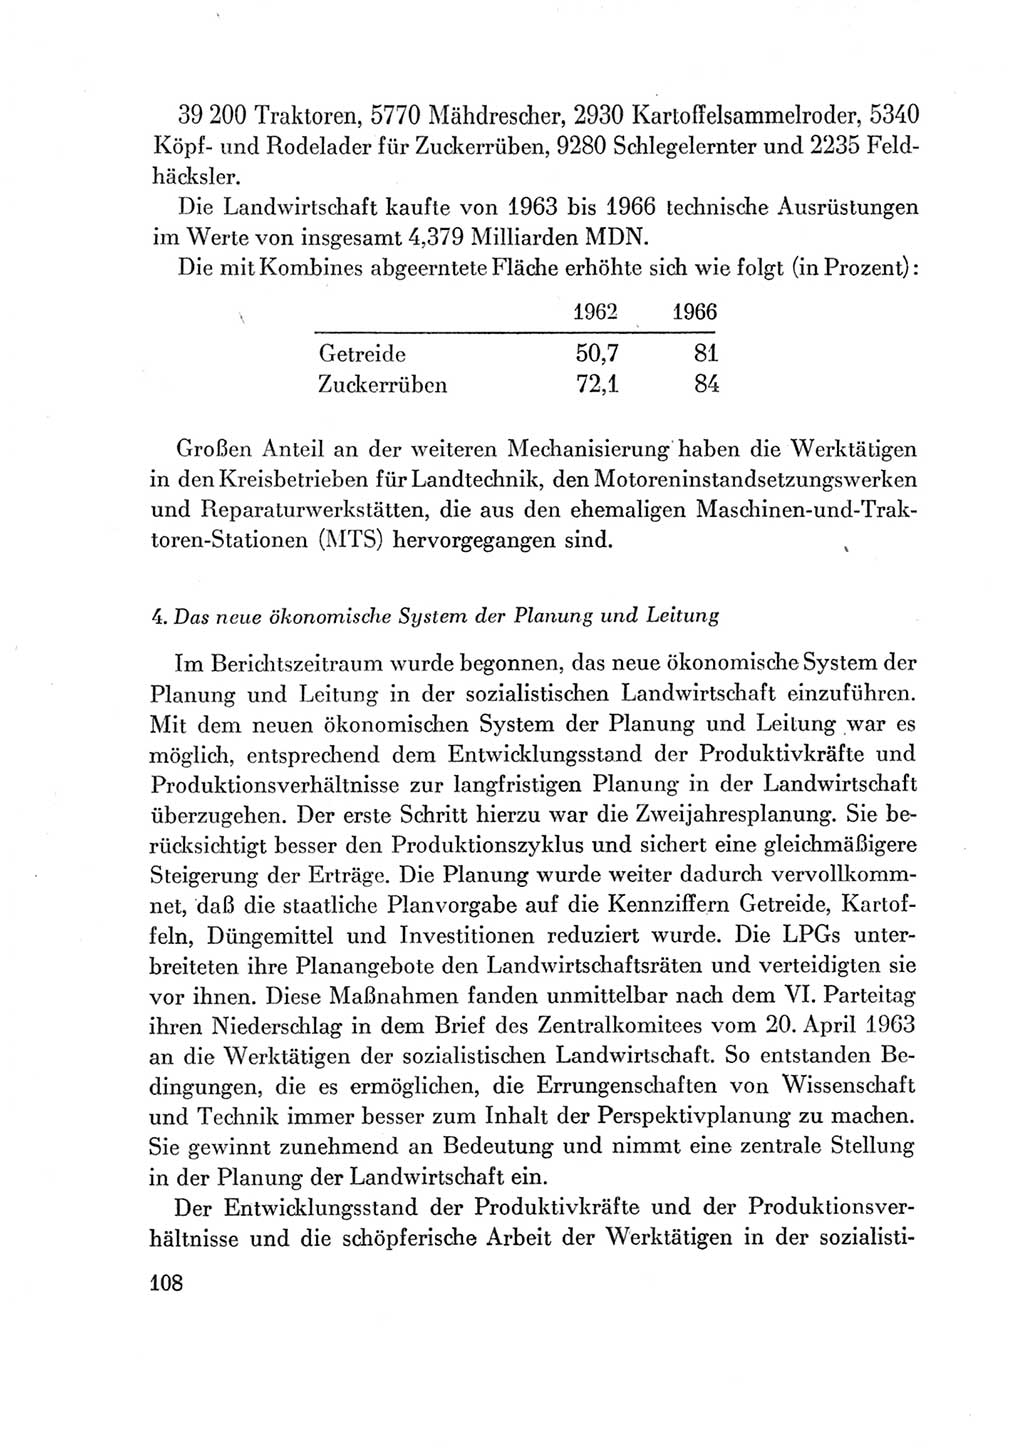 Protokoll der Verhandlungen des Ⅶ. Parteitages der Sozialistischen Einheitspartei Deutschlands (SED) [Deutsche Demokratische Republik (DDR)] 1967, Band Ⅳ, Seite 108 (Prot. Verh. Ⅶ. PT SED DDR 1967, Bd. Ⅳ, S. 108)